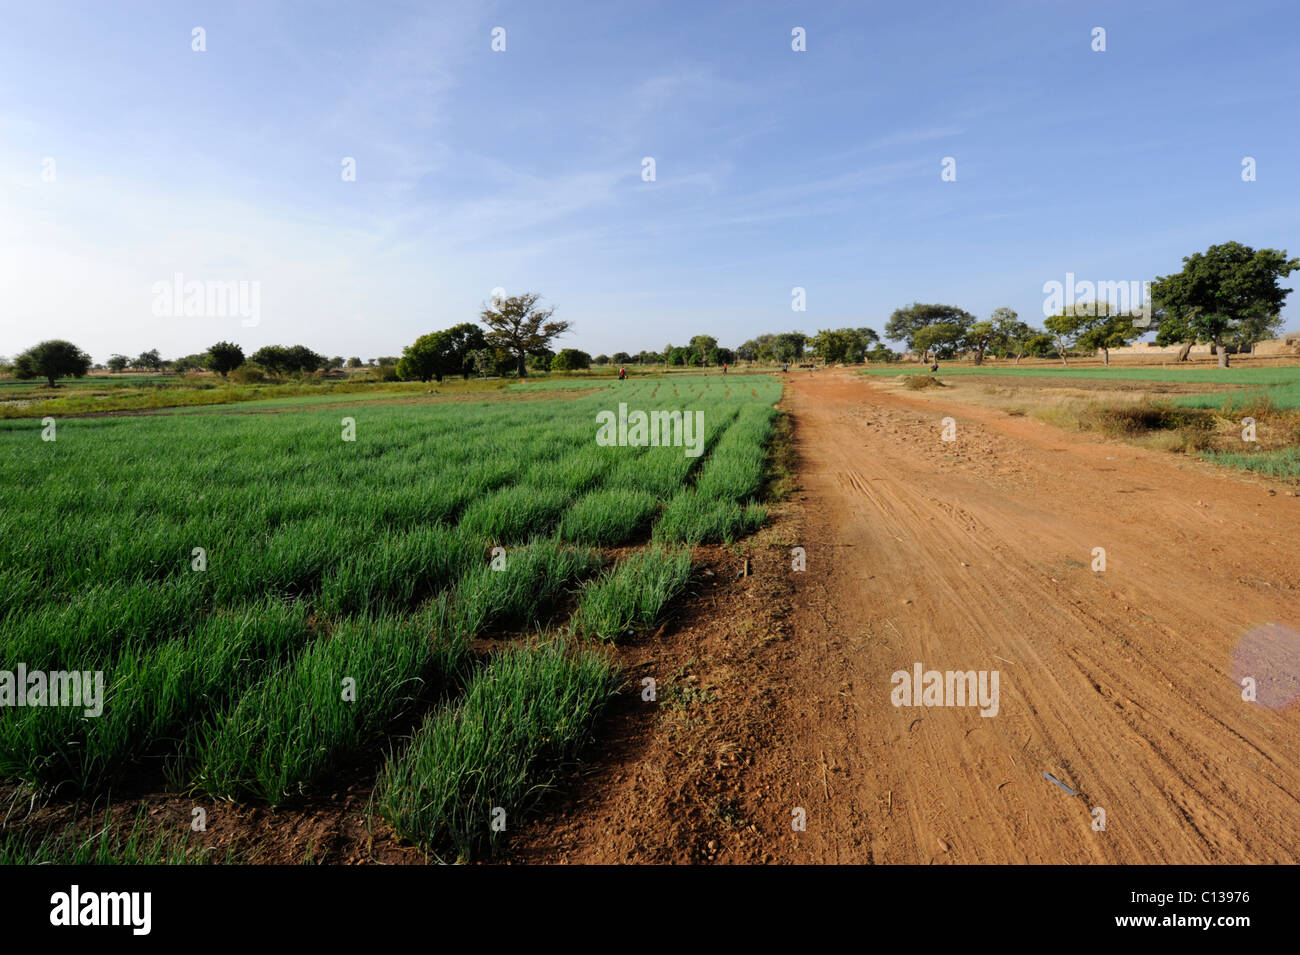 Les champs d'oignon le long d'une route poussiéreuse sur le plateau Dogon, Pays Dogon, au Mali. Banque D'Images